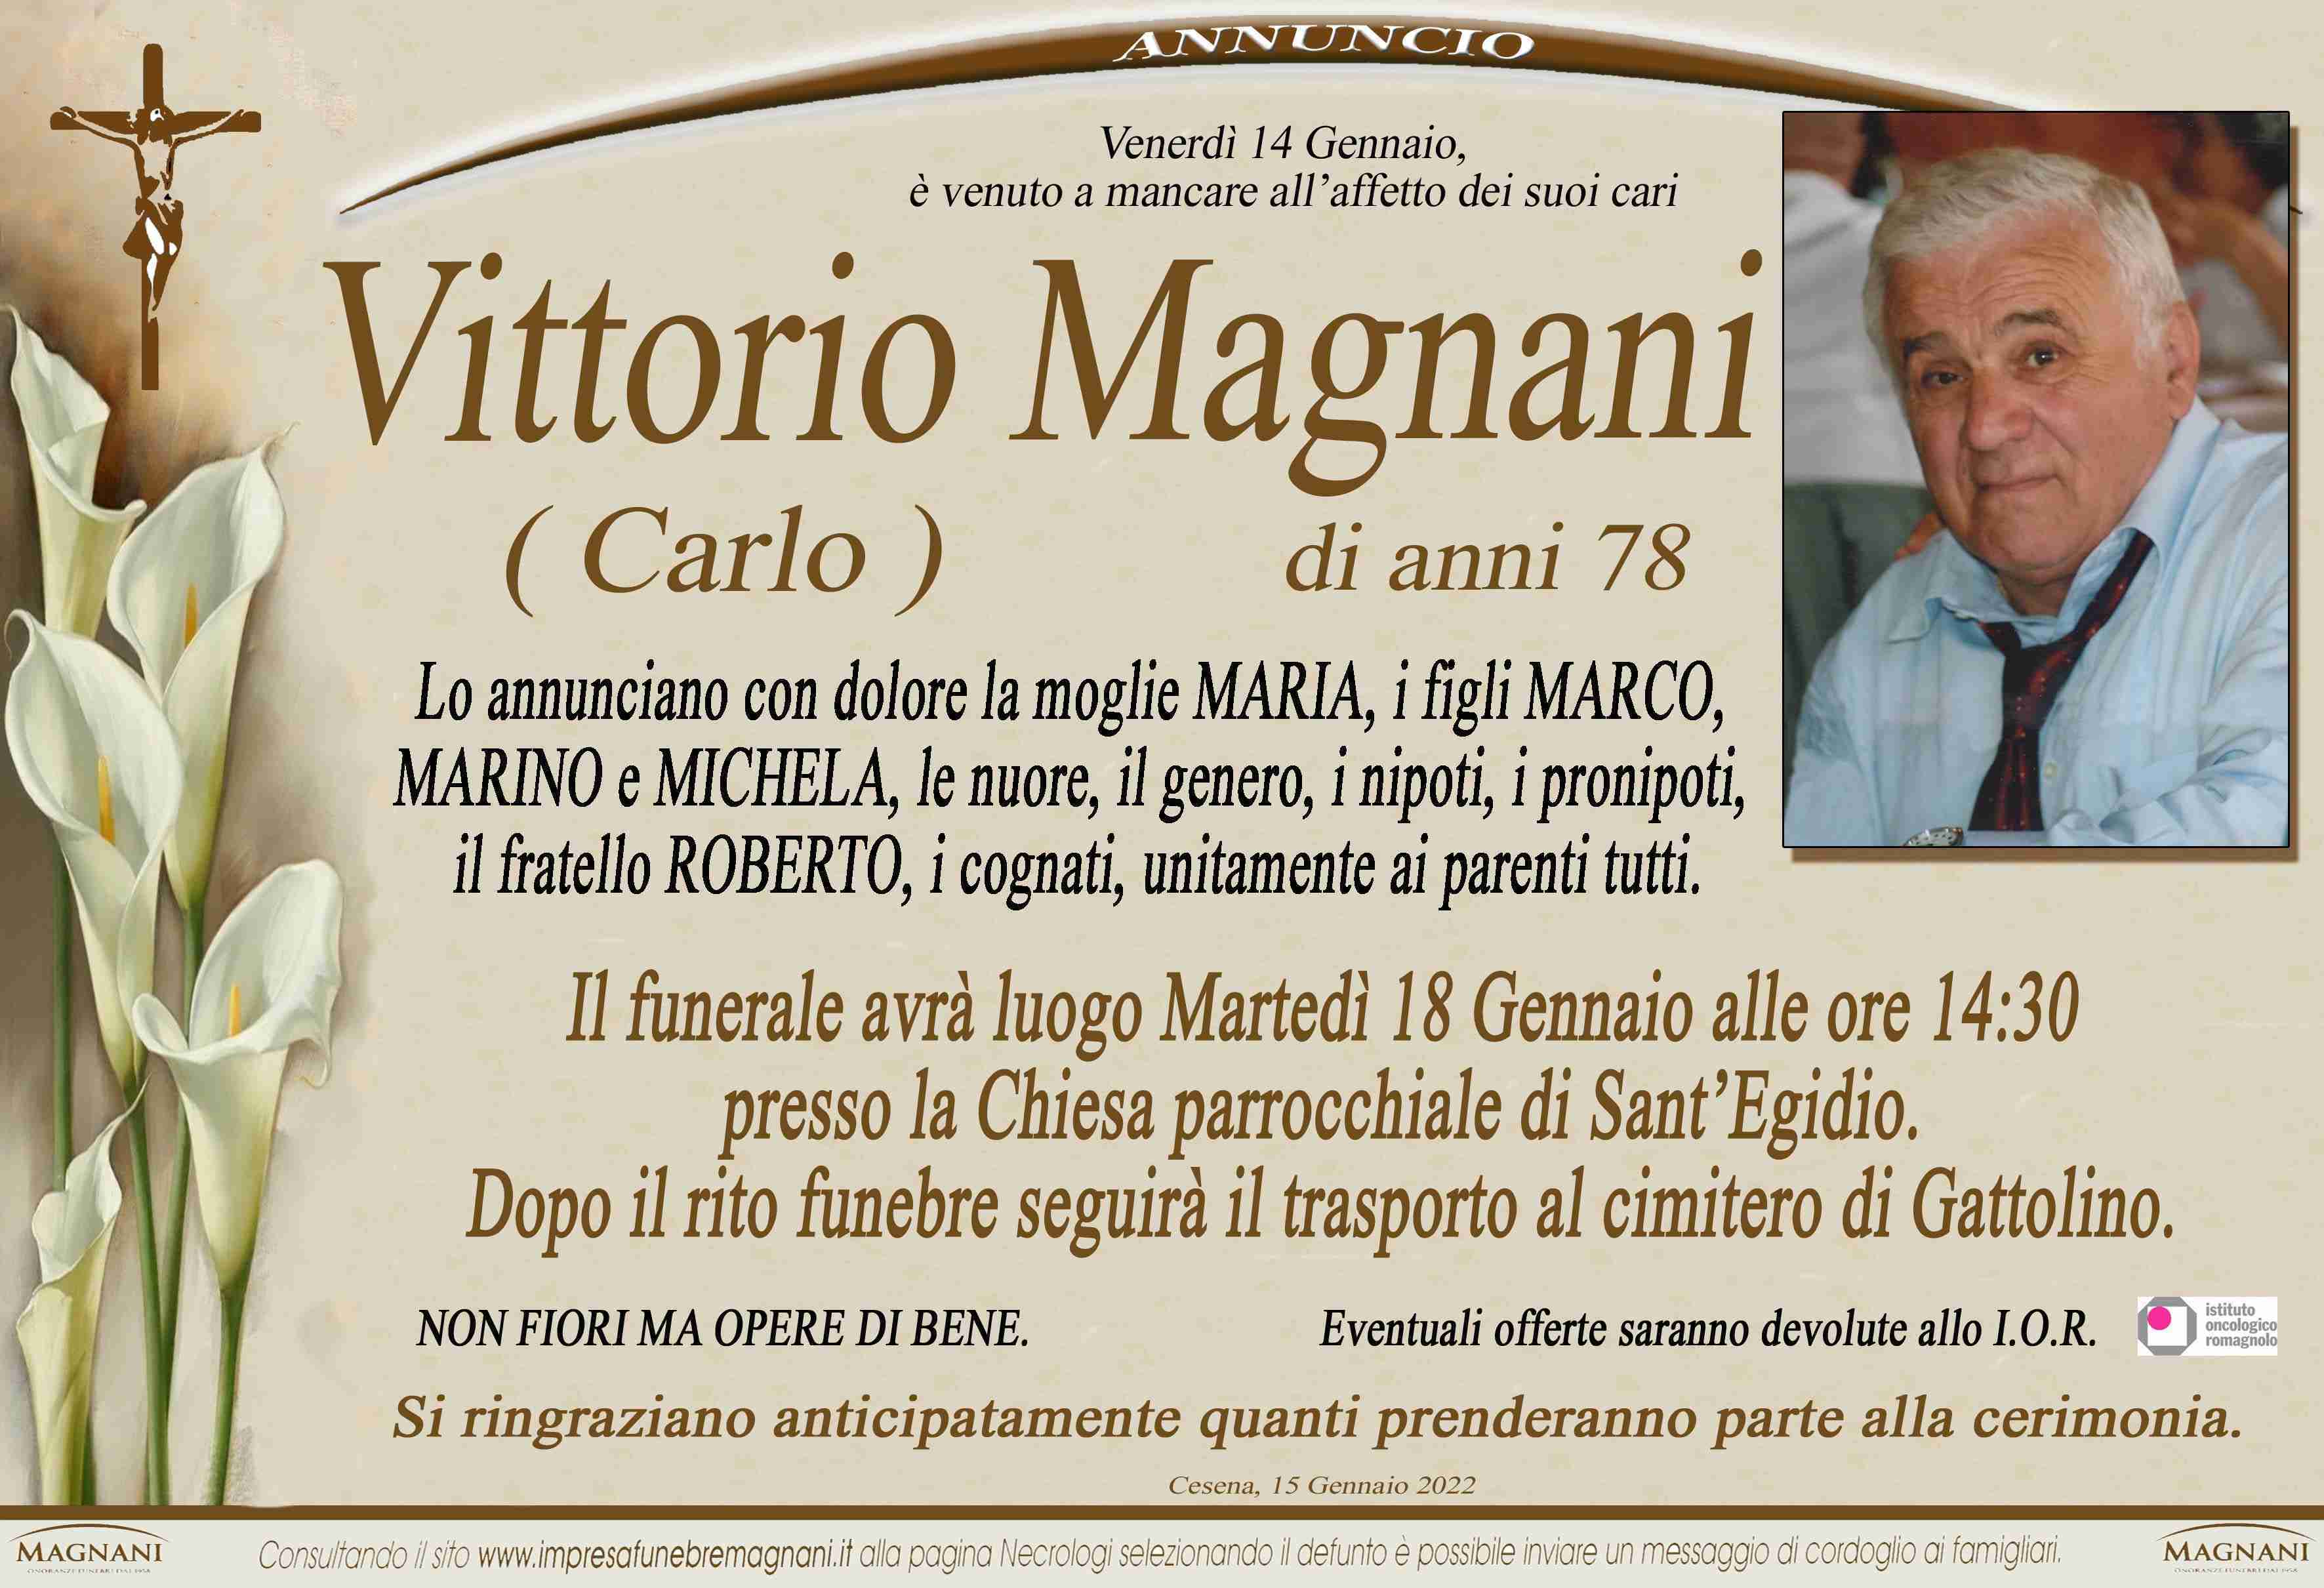 Vittorio Magnani